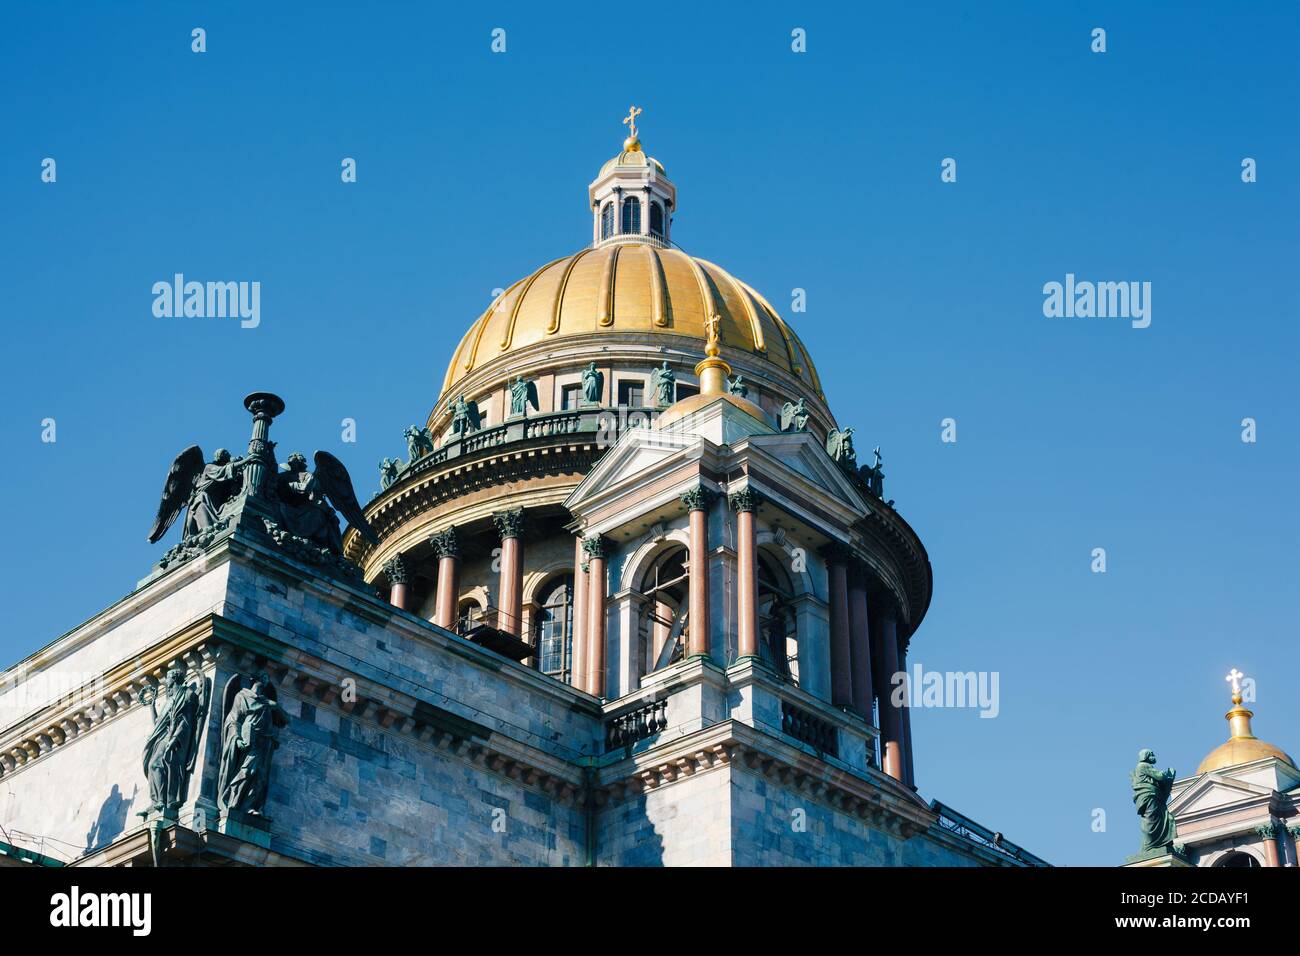 Goldene Kuppel der Isaakskathedrale in Sankt Petersburg, berühmtes Wahrzeichen der Stadt Stockfoto